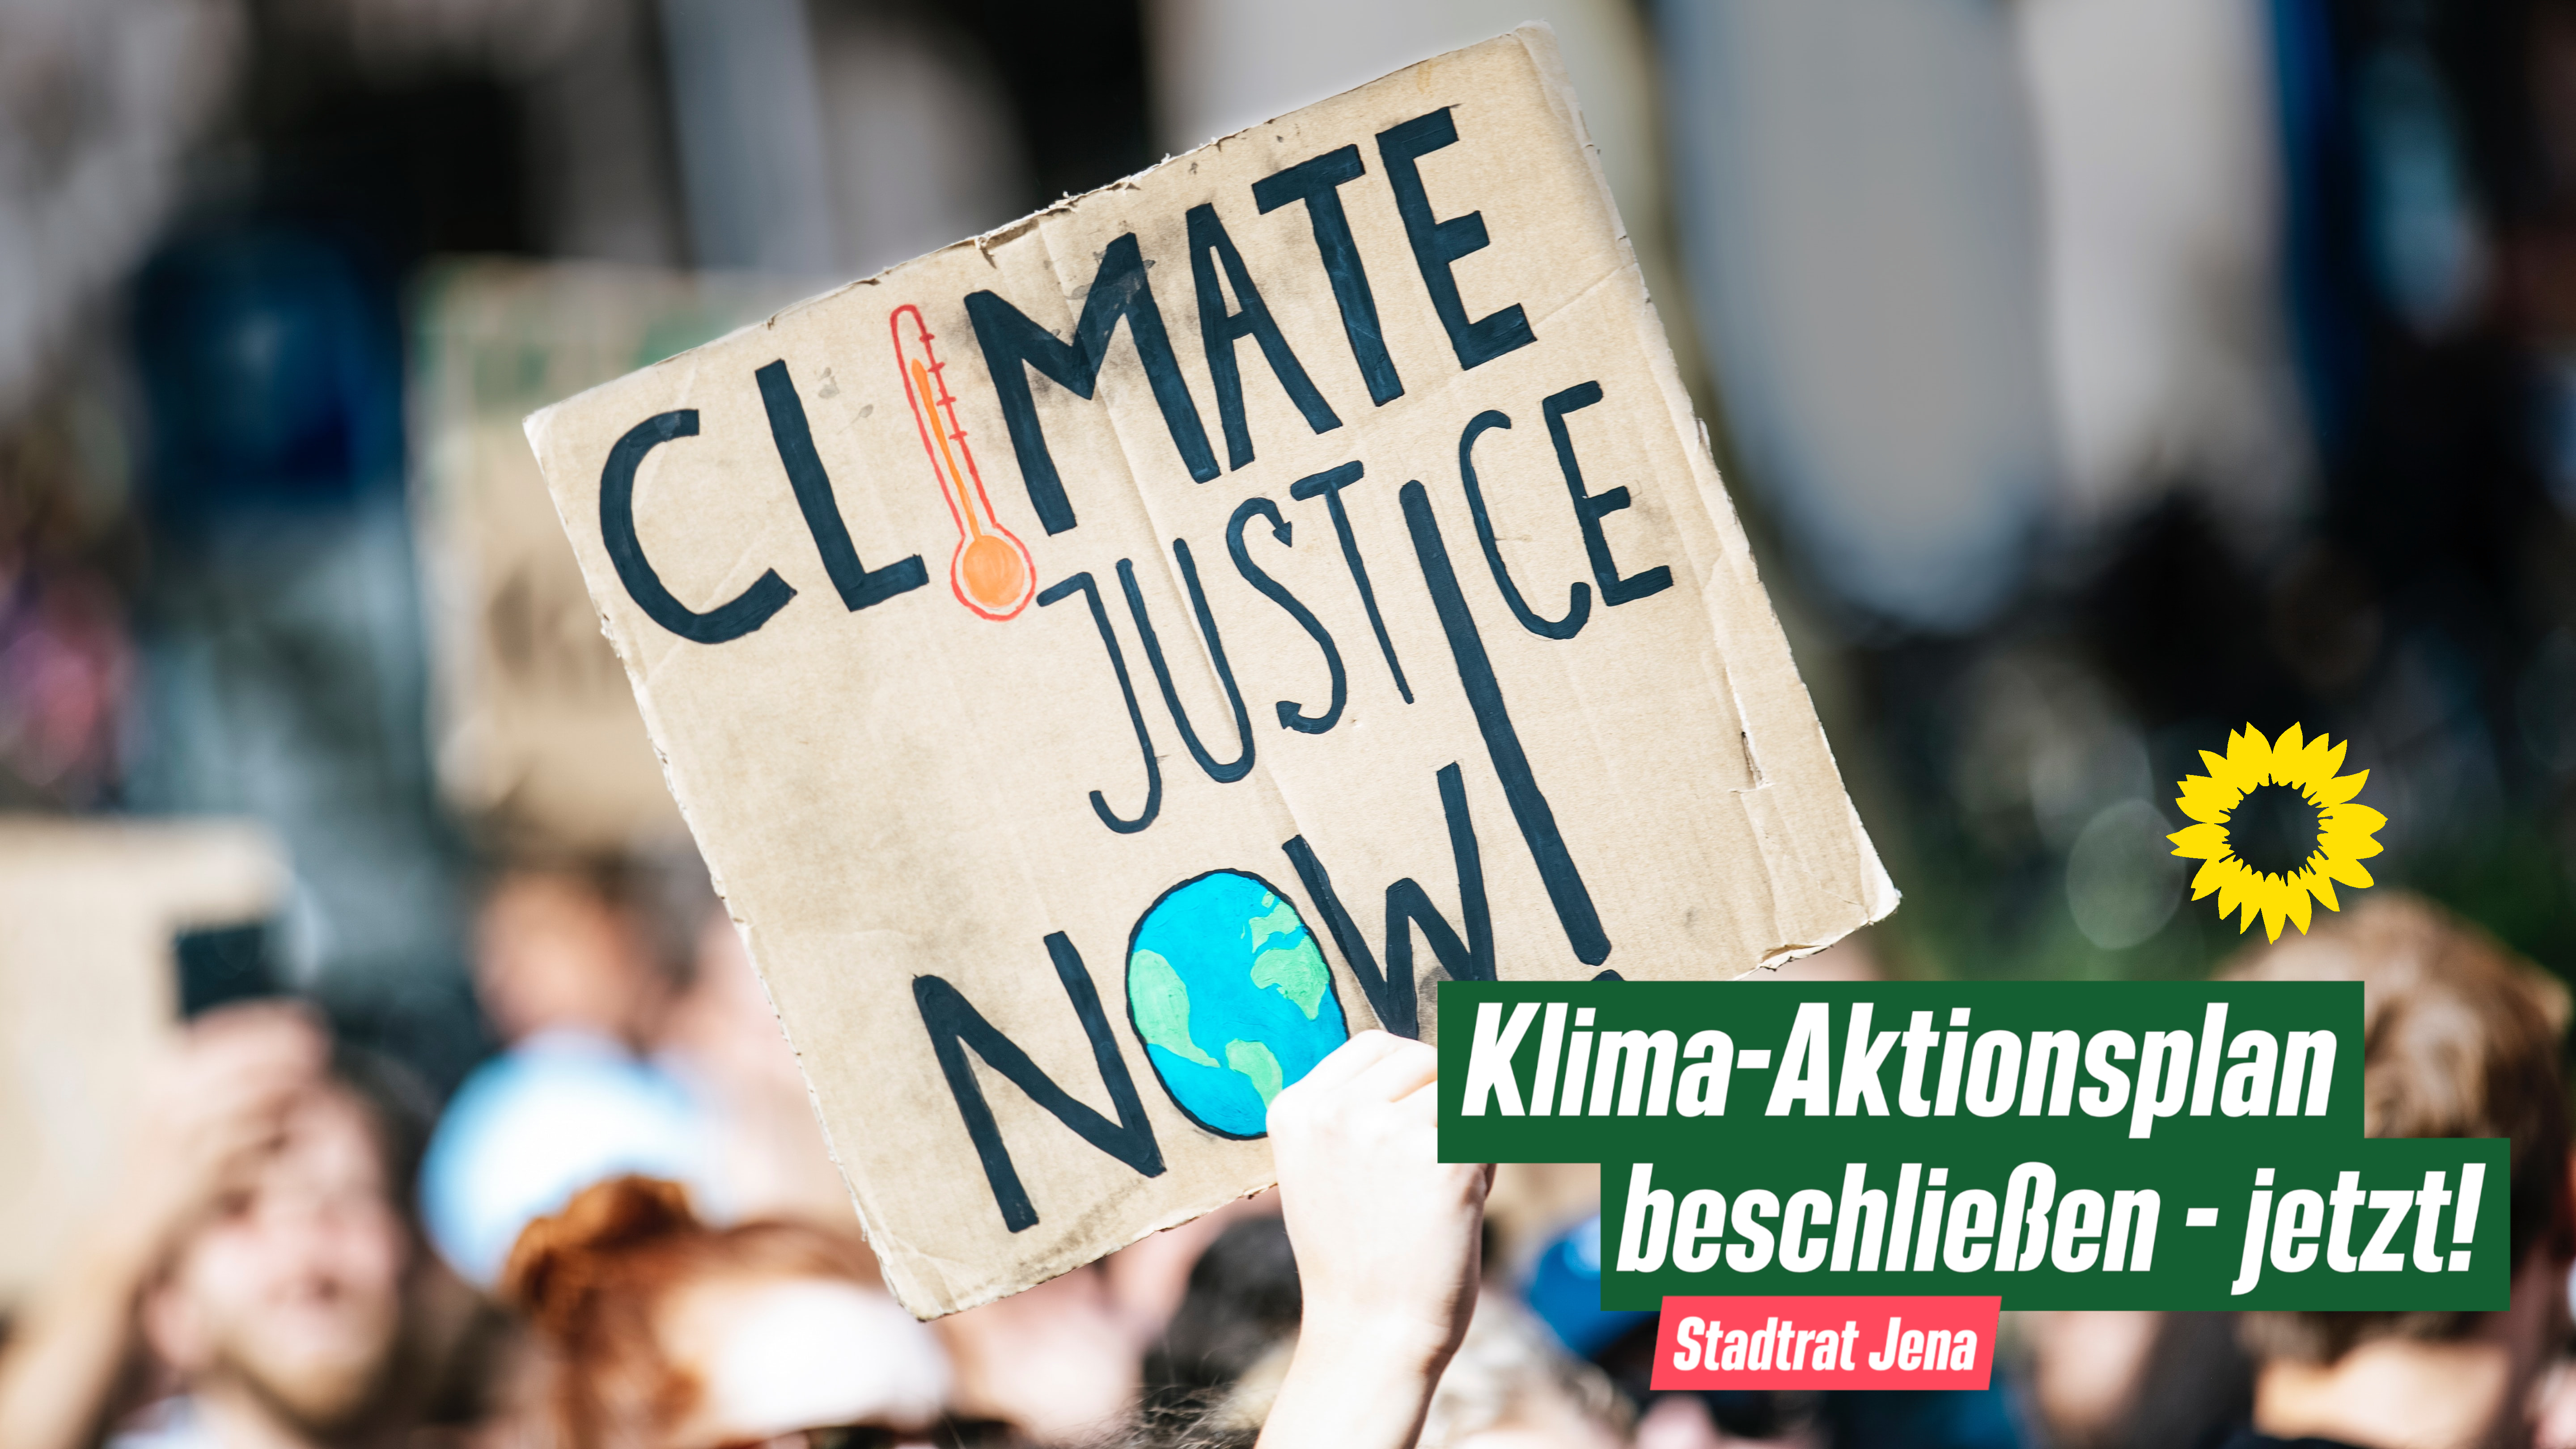 Ein Schild wird auf einer Demo hochgehalten, auf dem steht: Climate Justice Now! Im Vordergrund: Klima-Aktionsplan beschließen - jetzt! Darunter: Stadtrat Jena. Daneben: Parteilogo der Grünen.